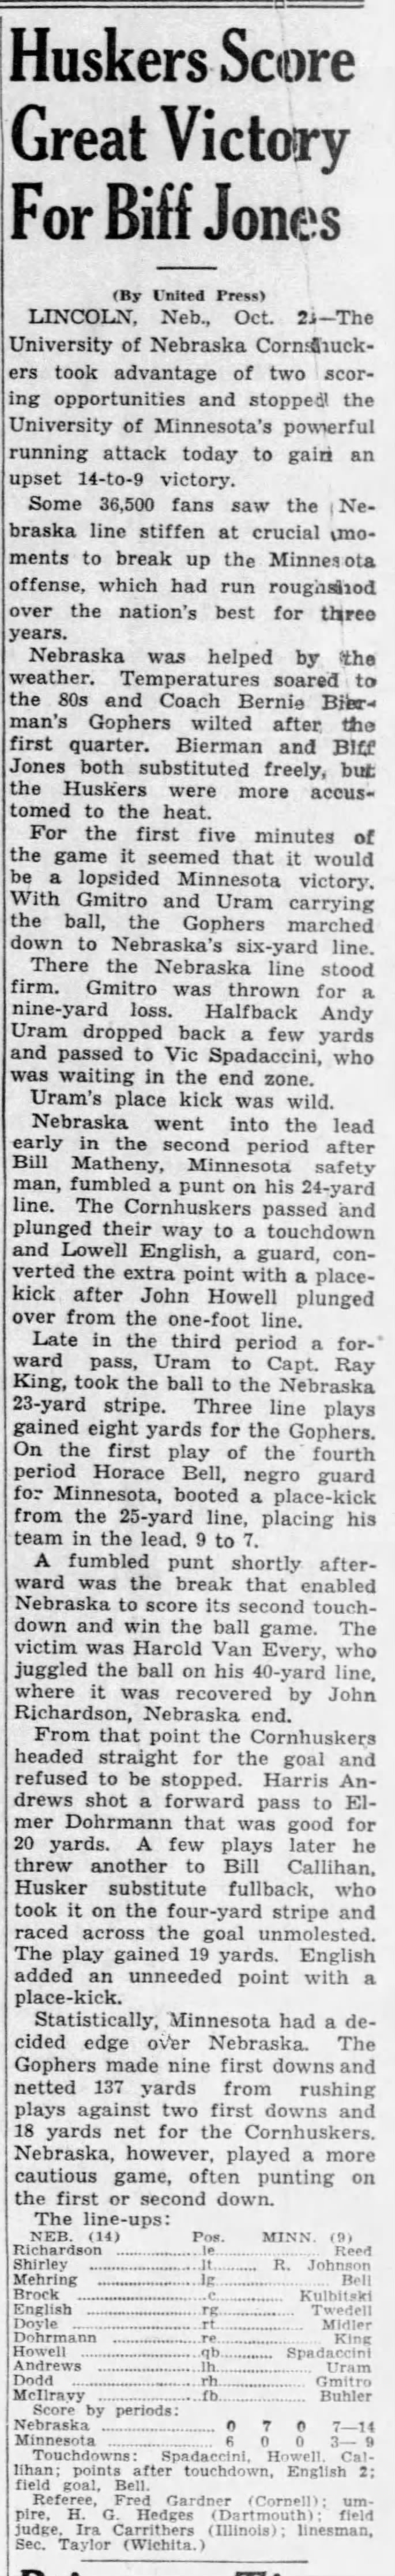 1937 Nebraska-Minnesota, United Press